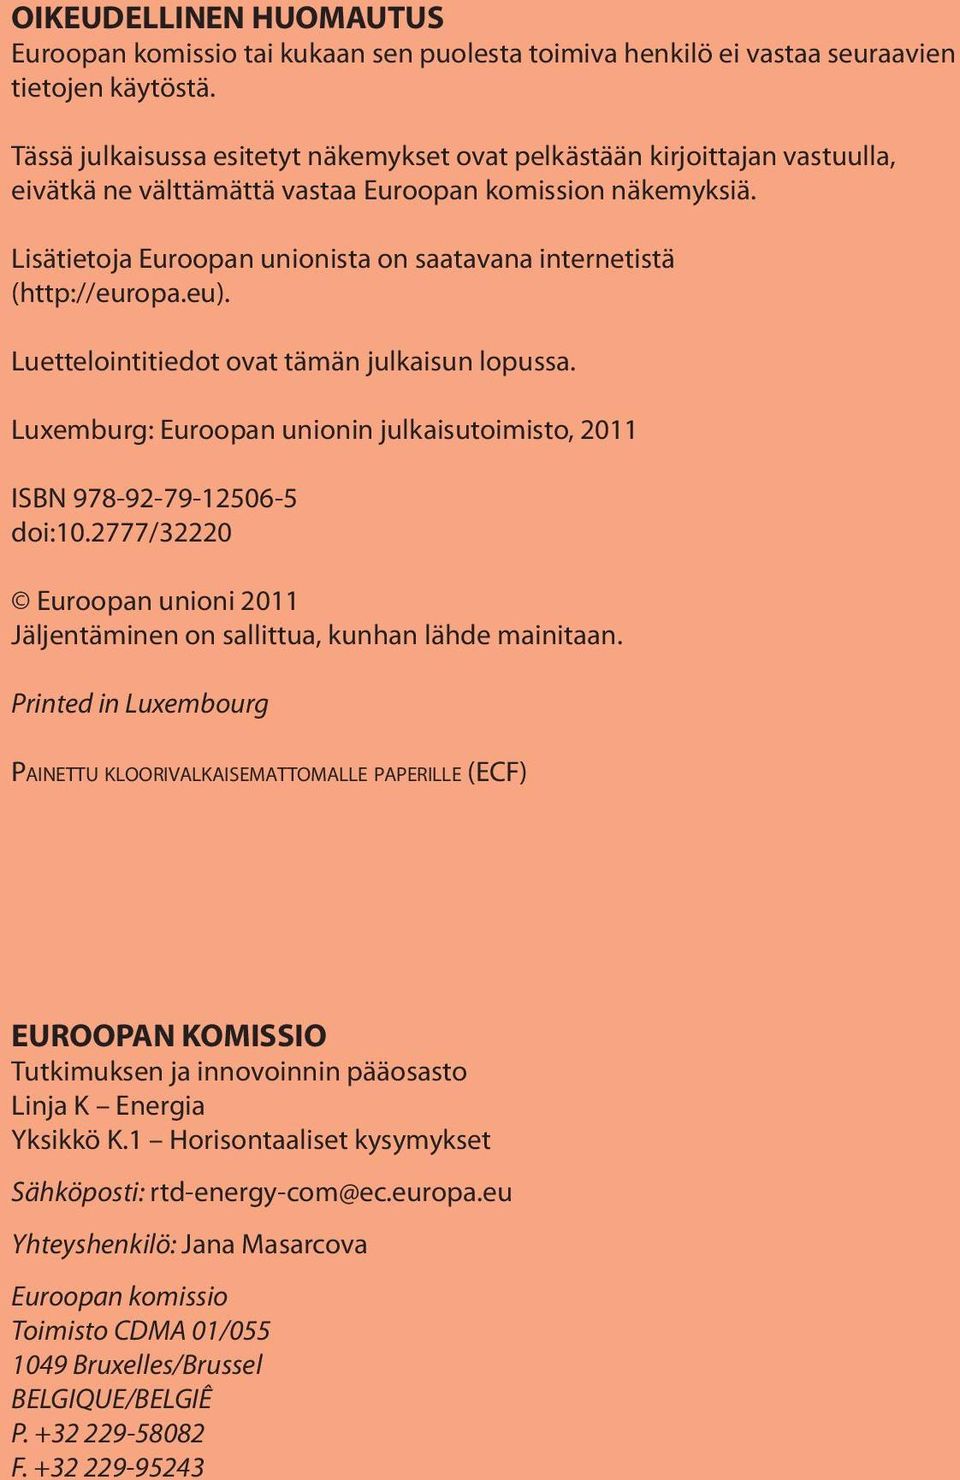 Lisätietoja Euroopan unionista on saatavana internetistä (http://europa.eu). Luettelointitiedot ovat tämän julkaisun lopussa.